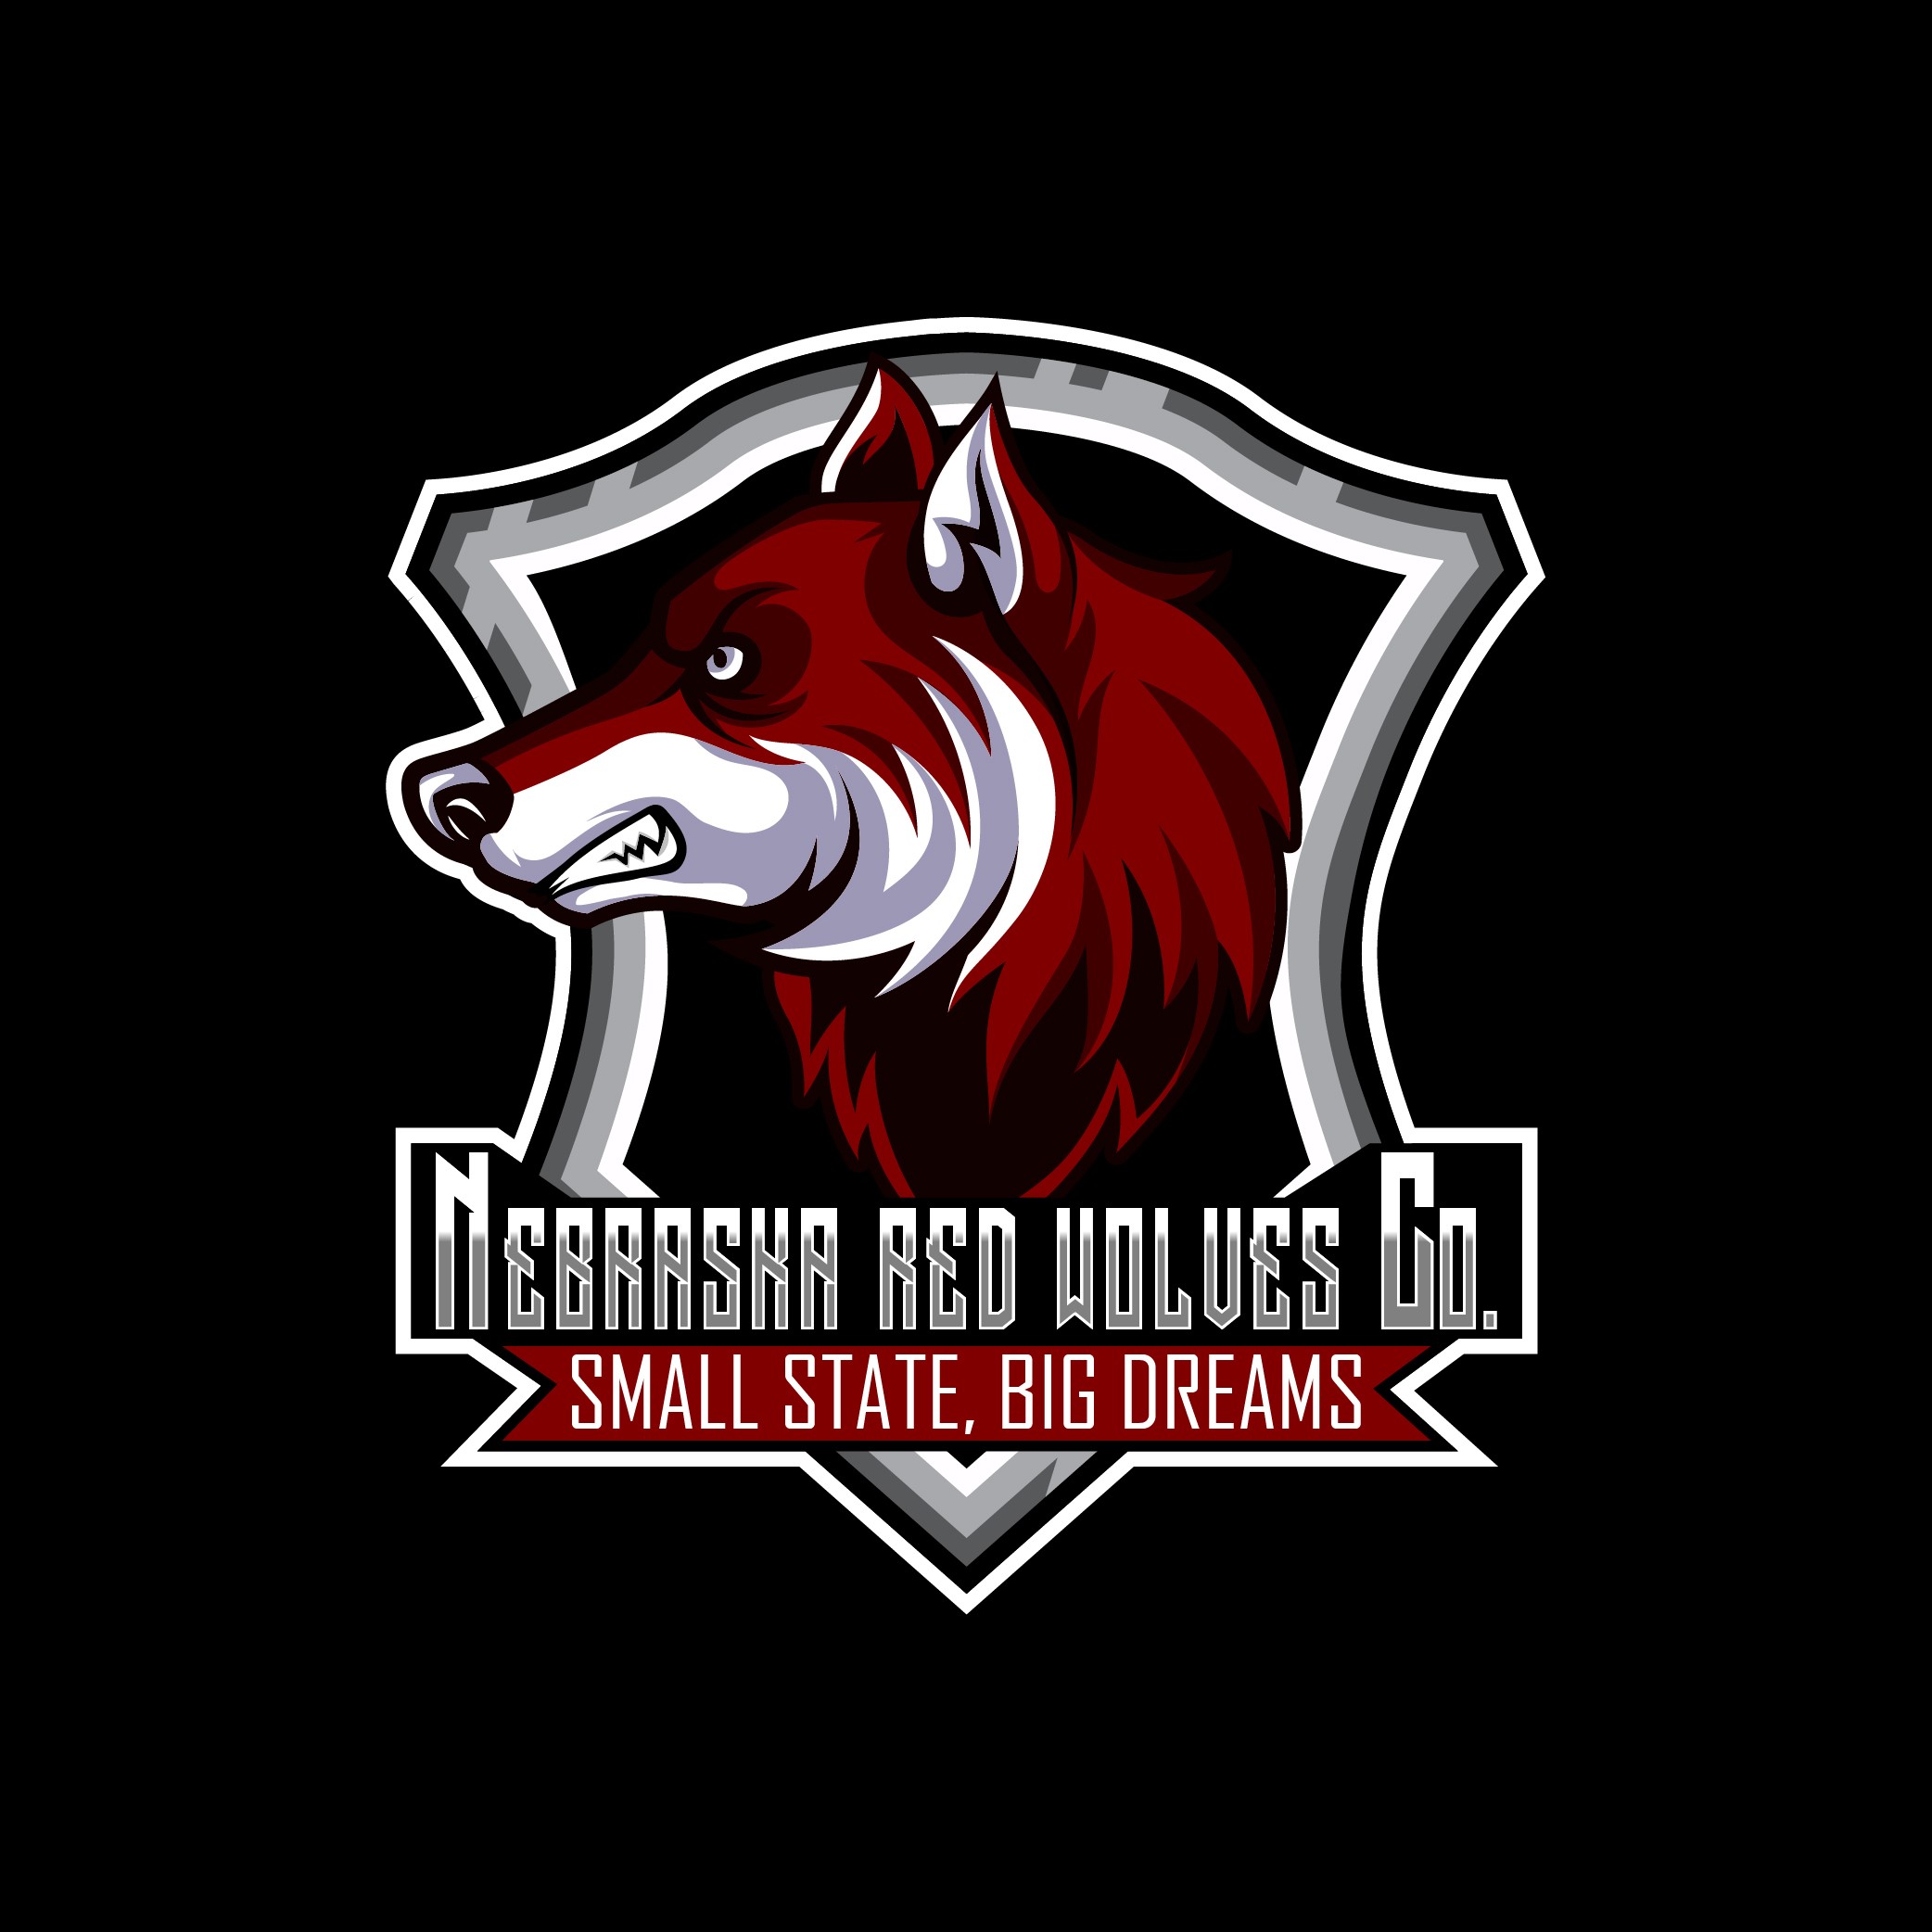 NEBRASKA RED Nebraska Red Wolves Co.